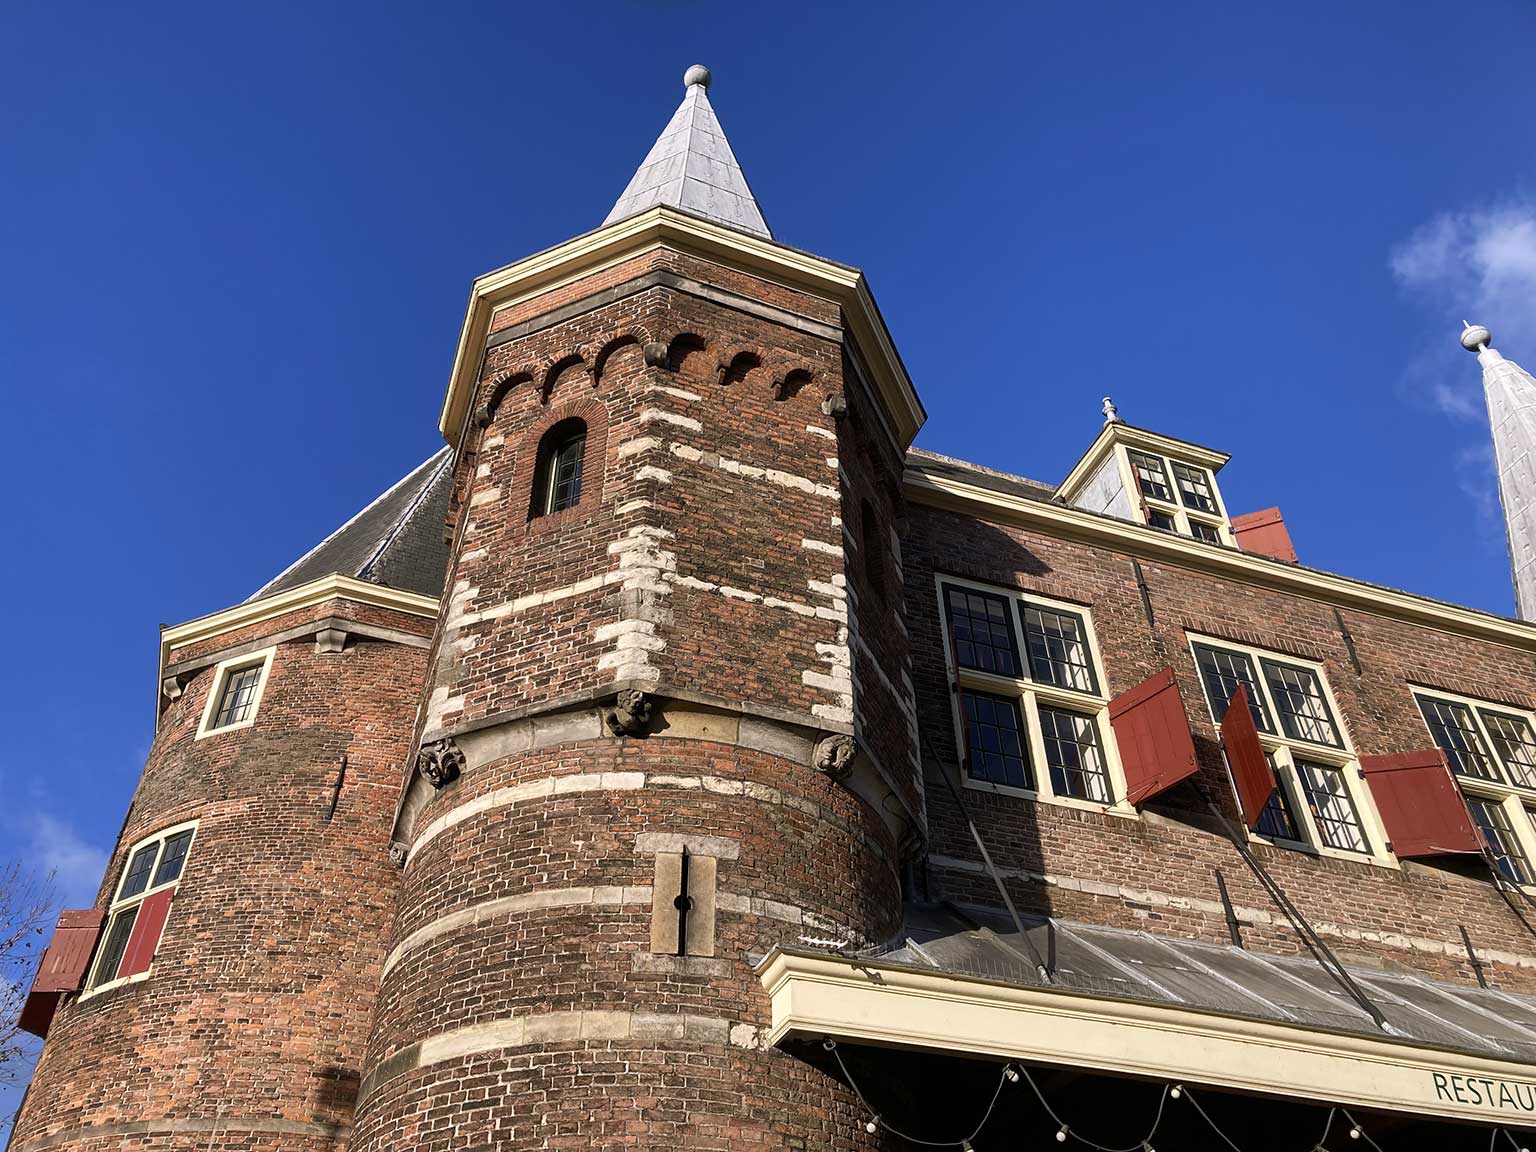 Left front tower of the Waag, Nieuwmarkt, Amsterdam